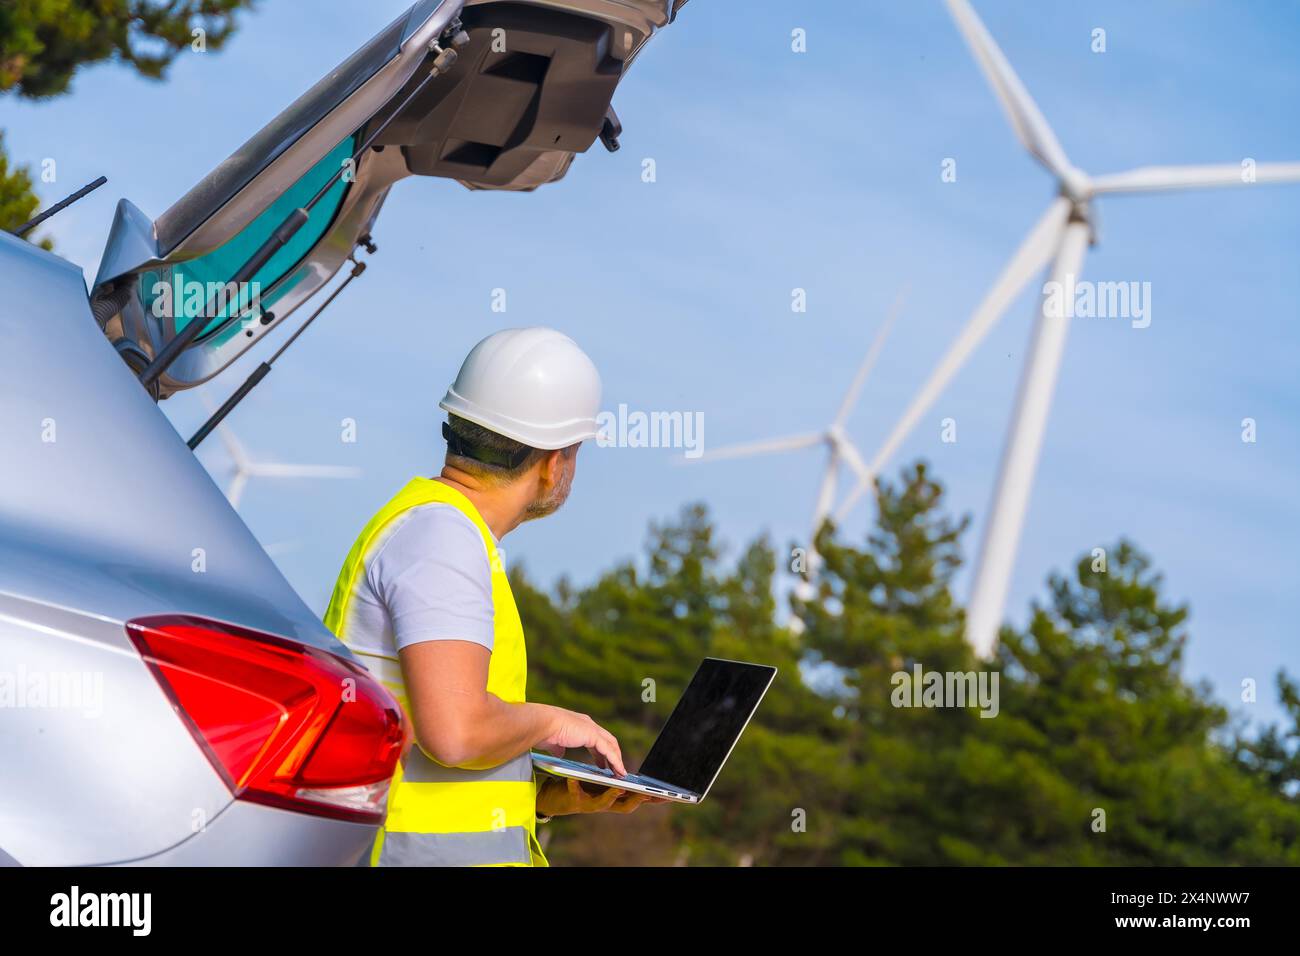 Technicien mûr masculin portant des vêtements réfléchissants et un casque rigide debout à côté de la voiture en utilisant un ordinateur portable travaillant dans un parc d'énergie éolienne avec des éoliennes Banque D'Images